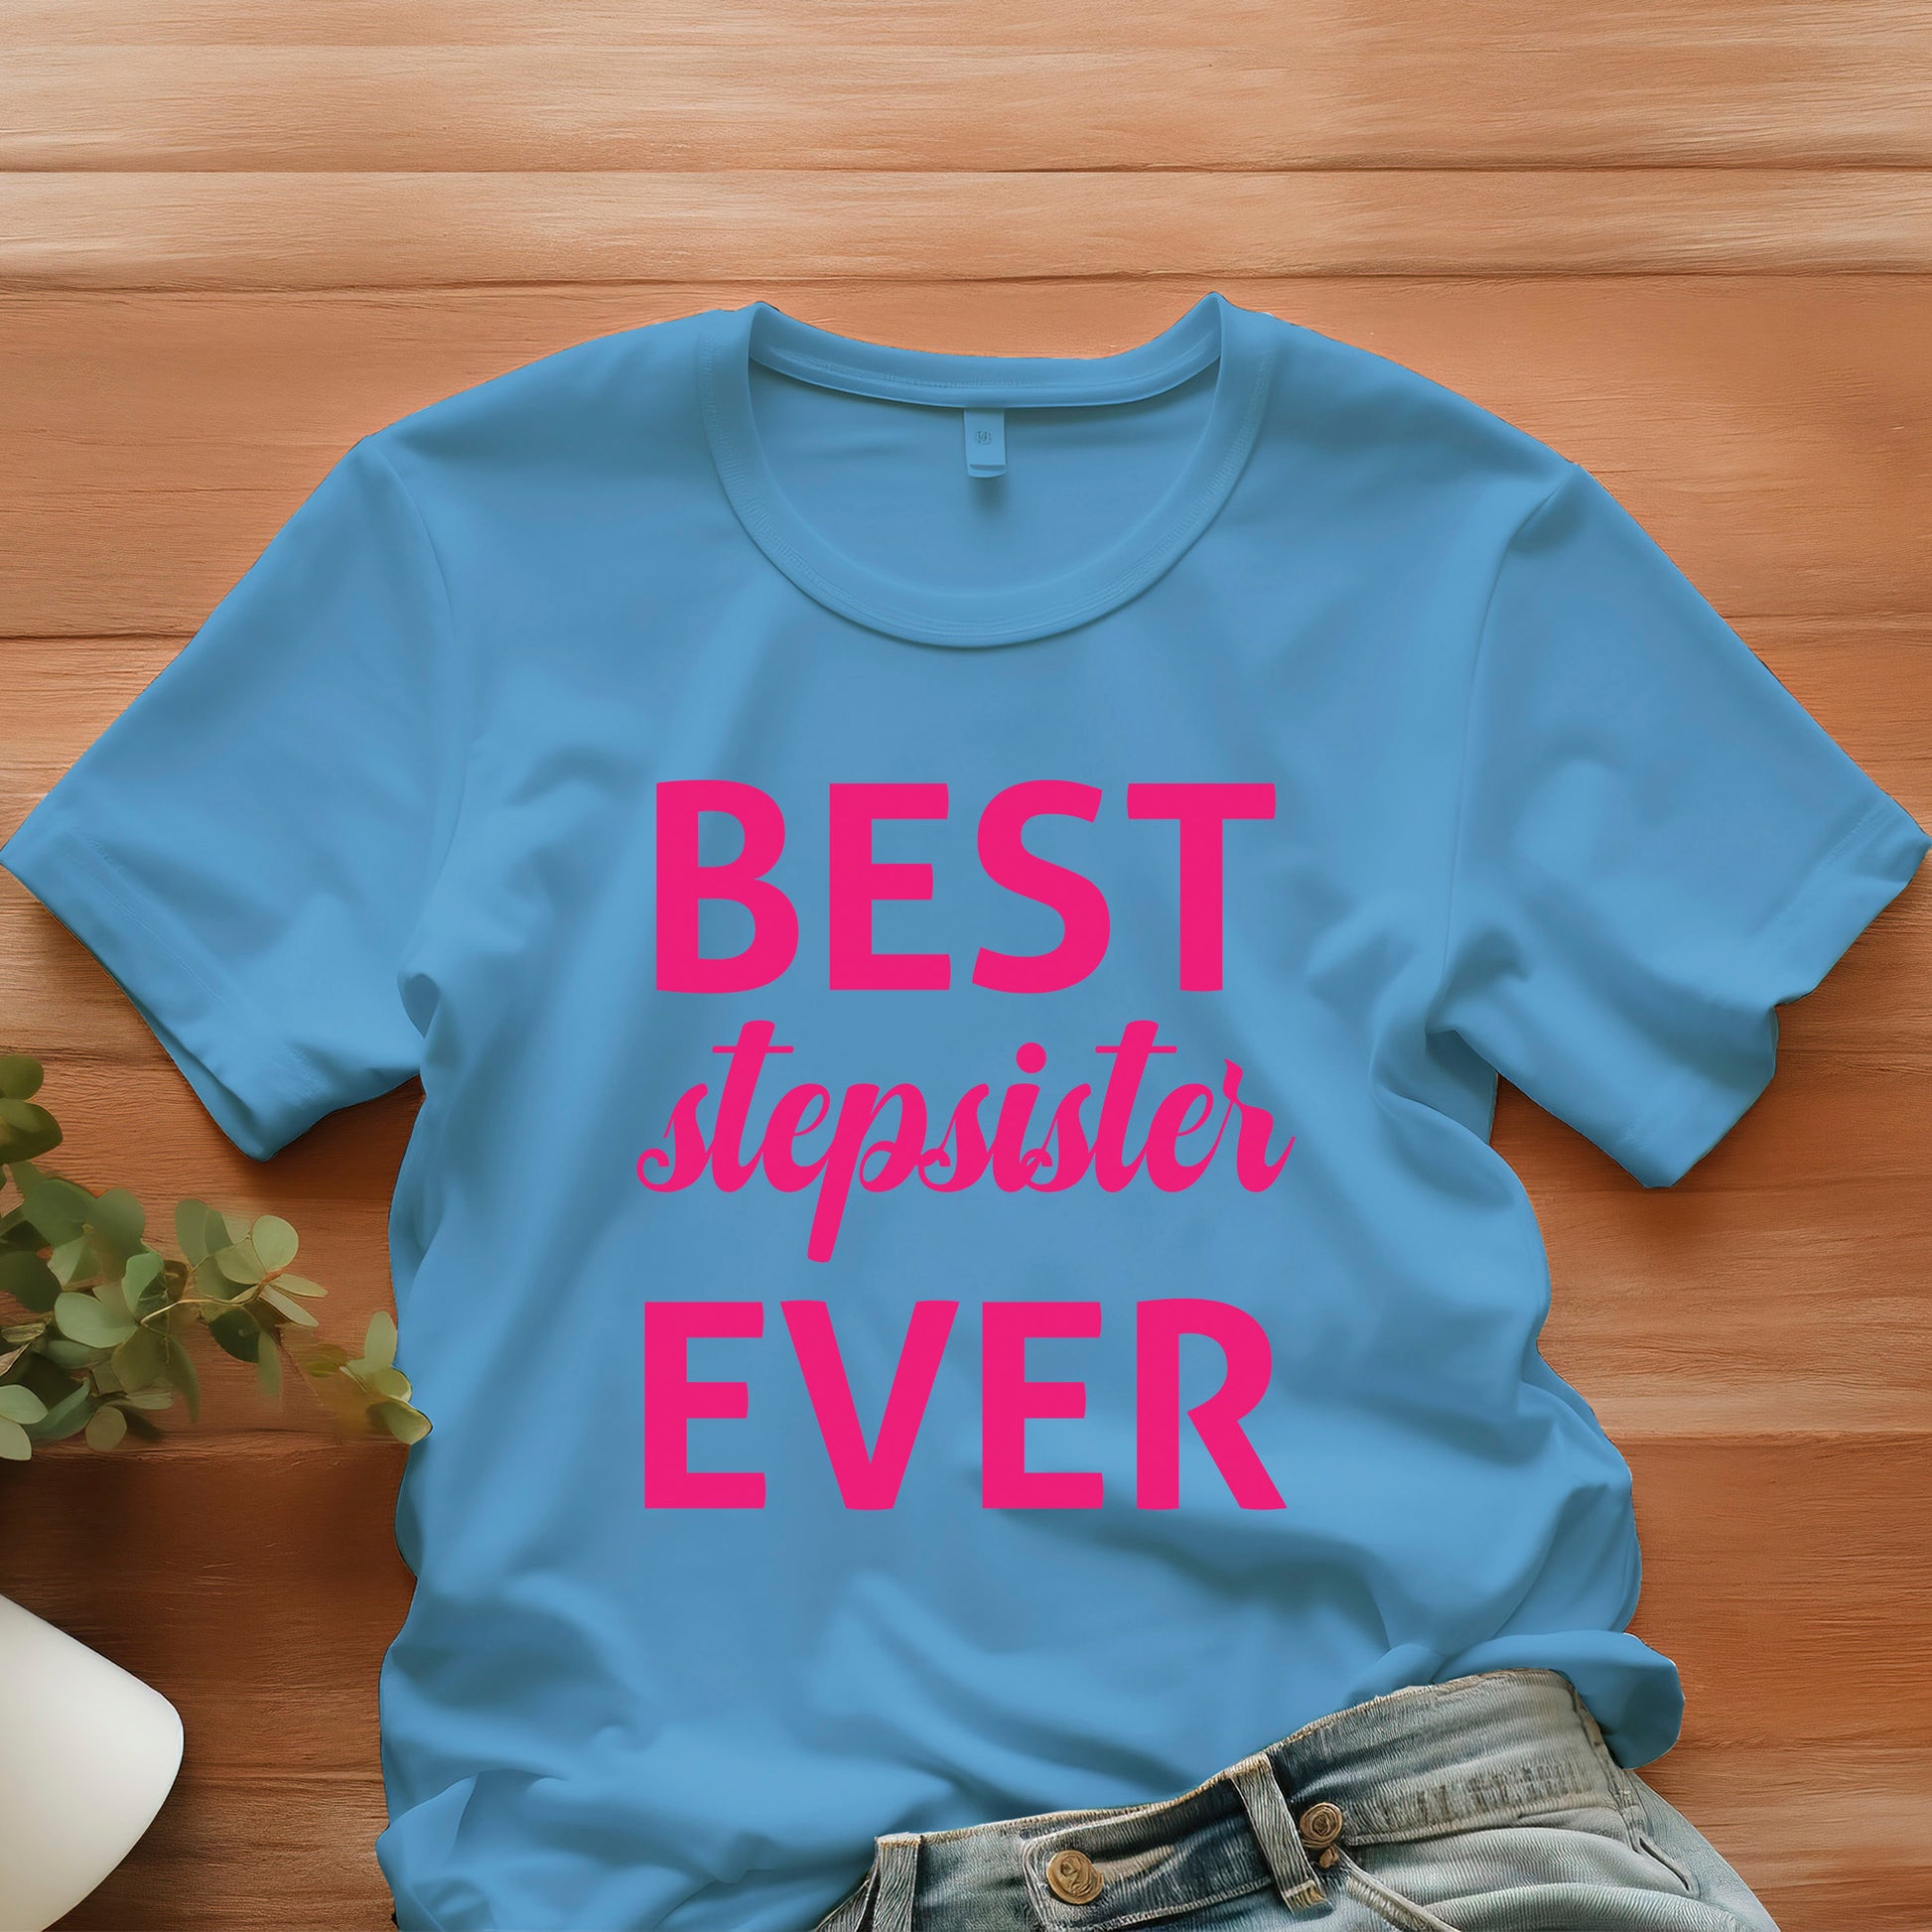 Best Stepsister Ever Shirt